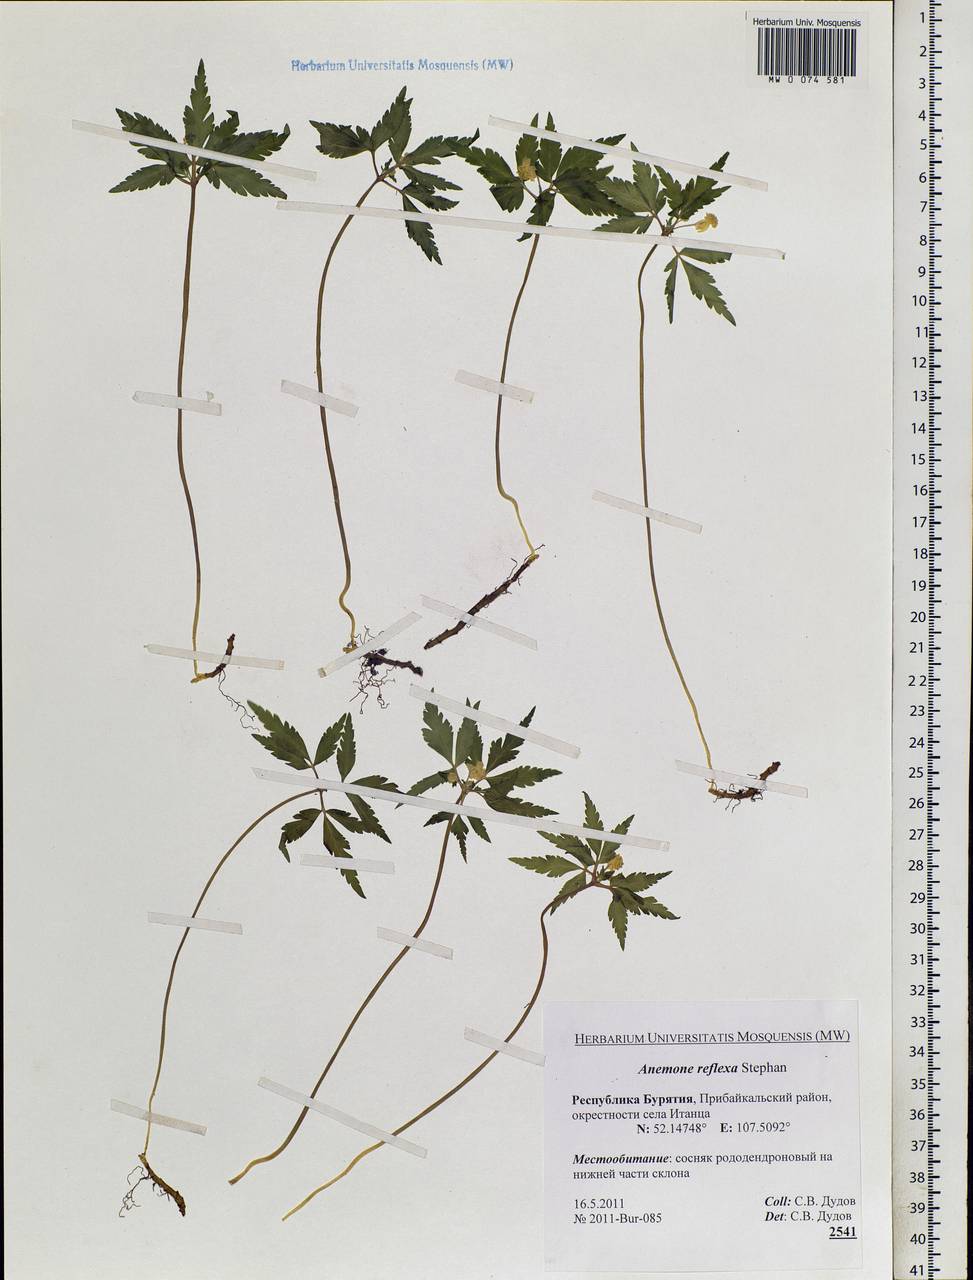 Anemone reflexa Steph. & Willd., Siberia, Baikal & Transbaikal region (S4) (Russia)